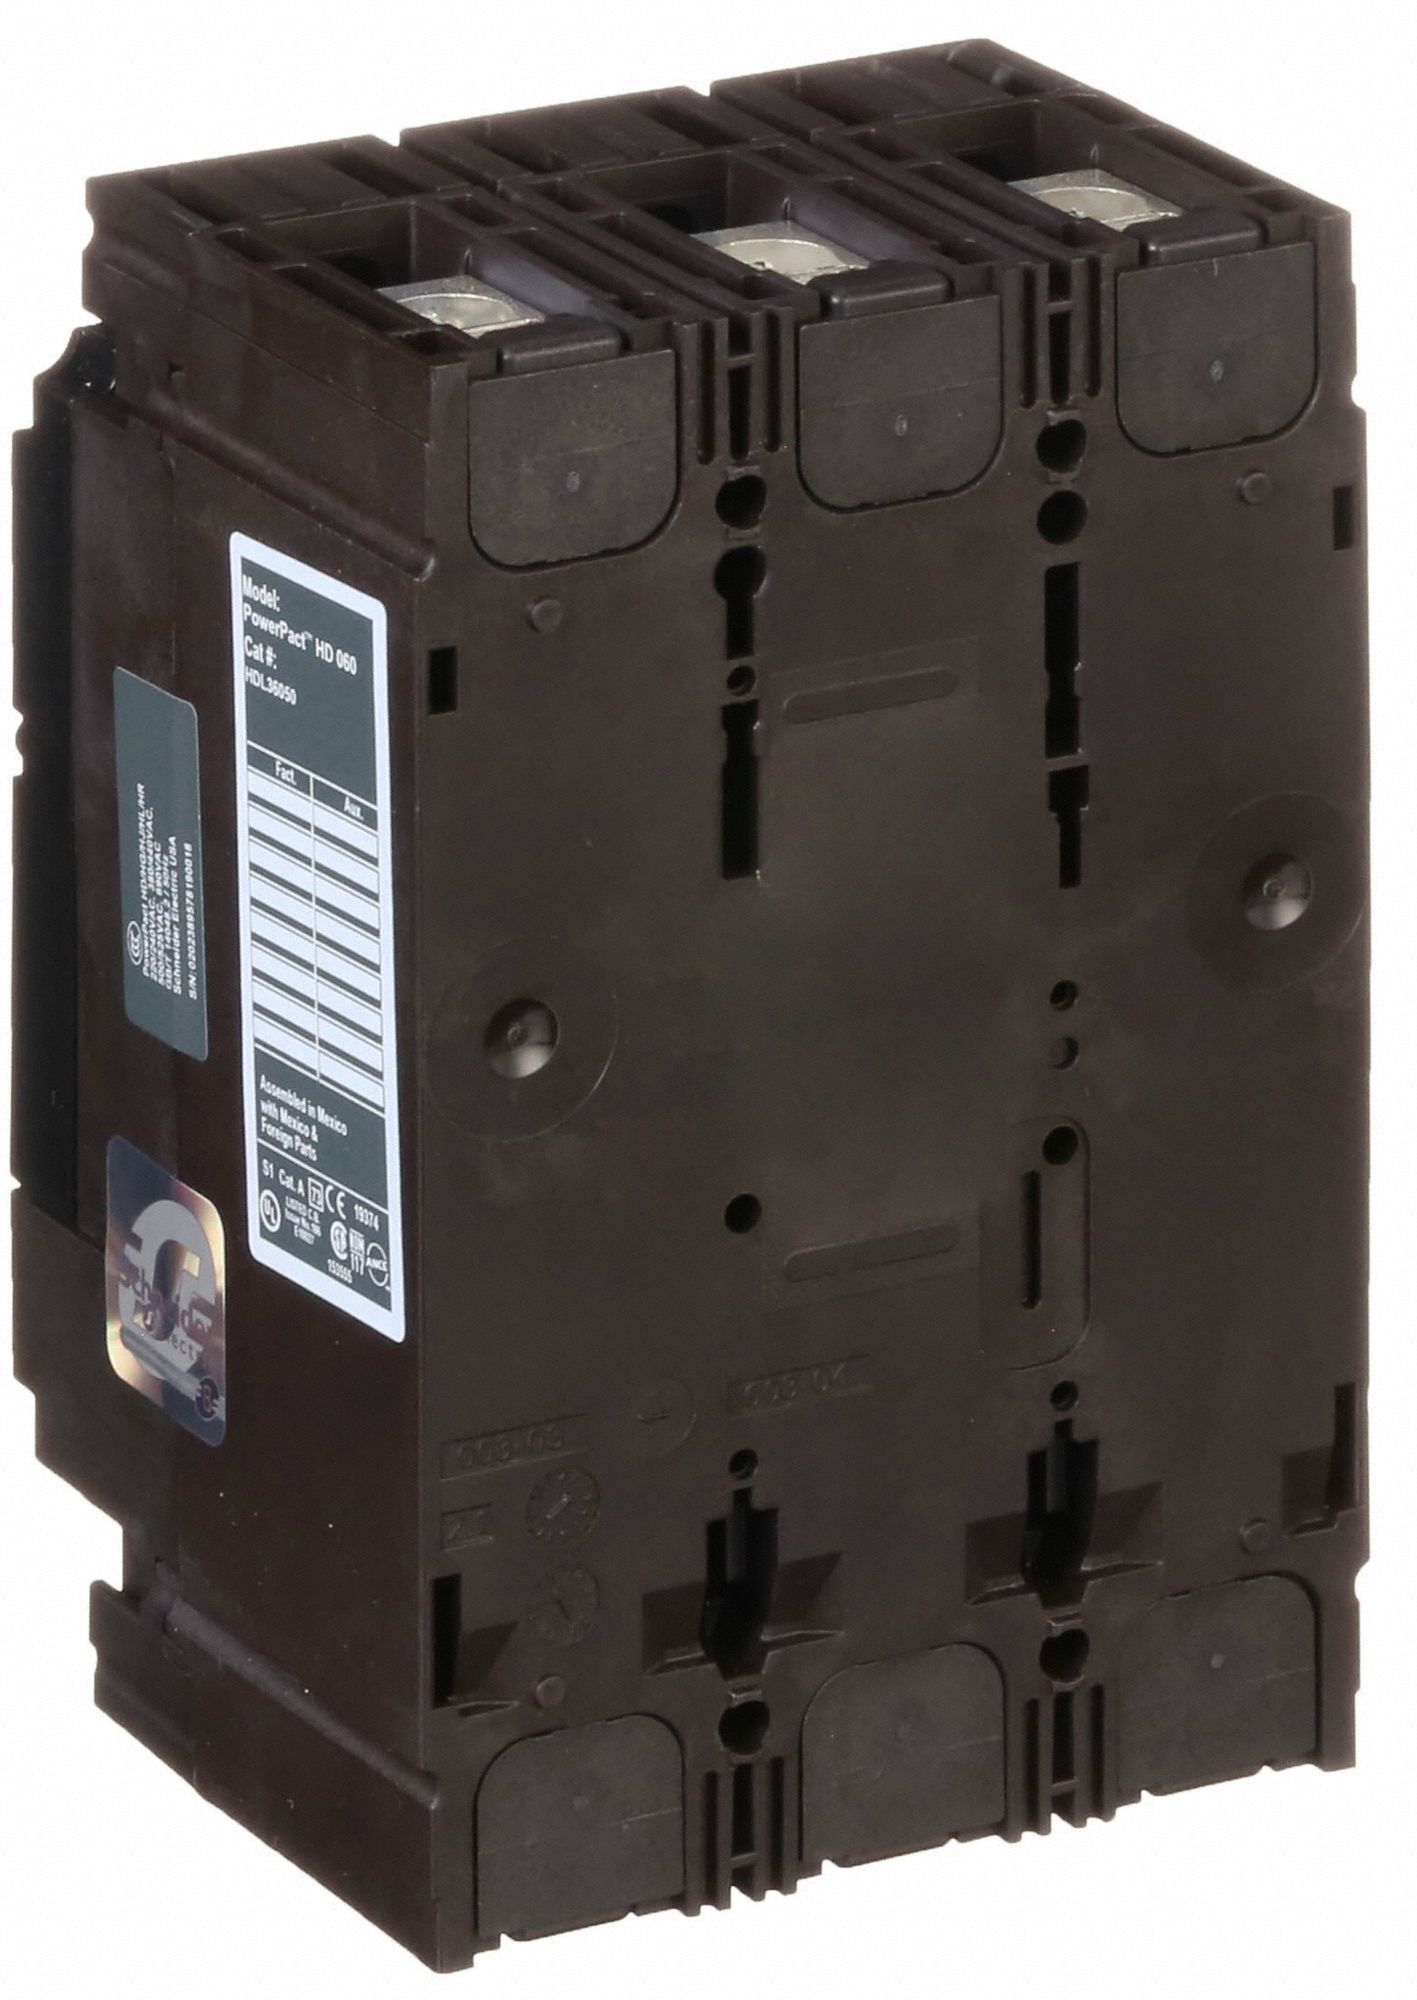 Square D HDL36050 Molded Case Circuit Breaker 600v 50a for sale online 